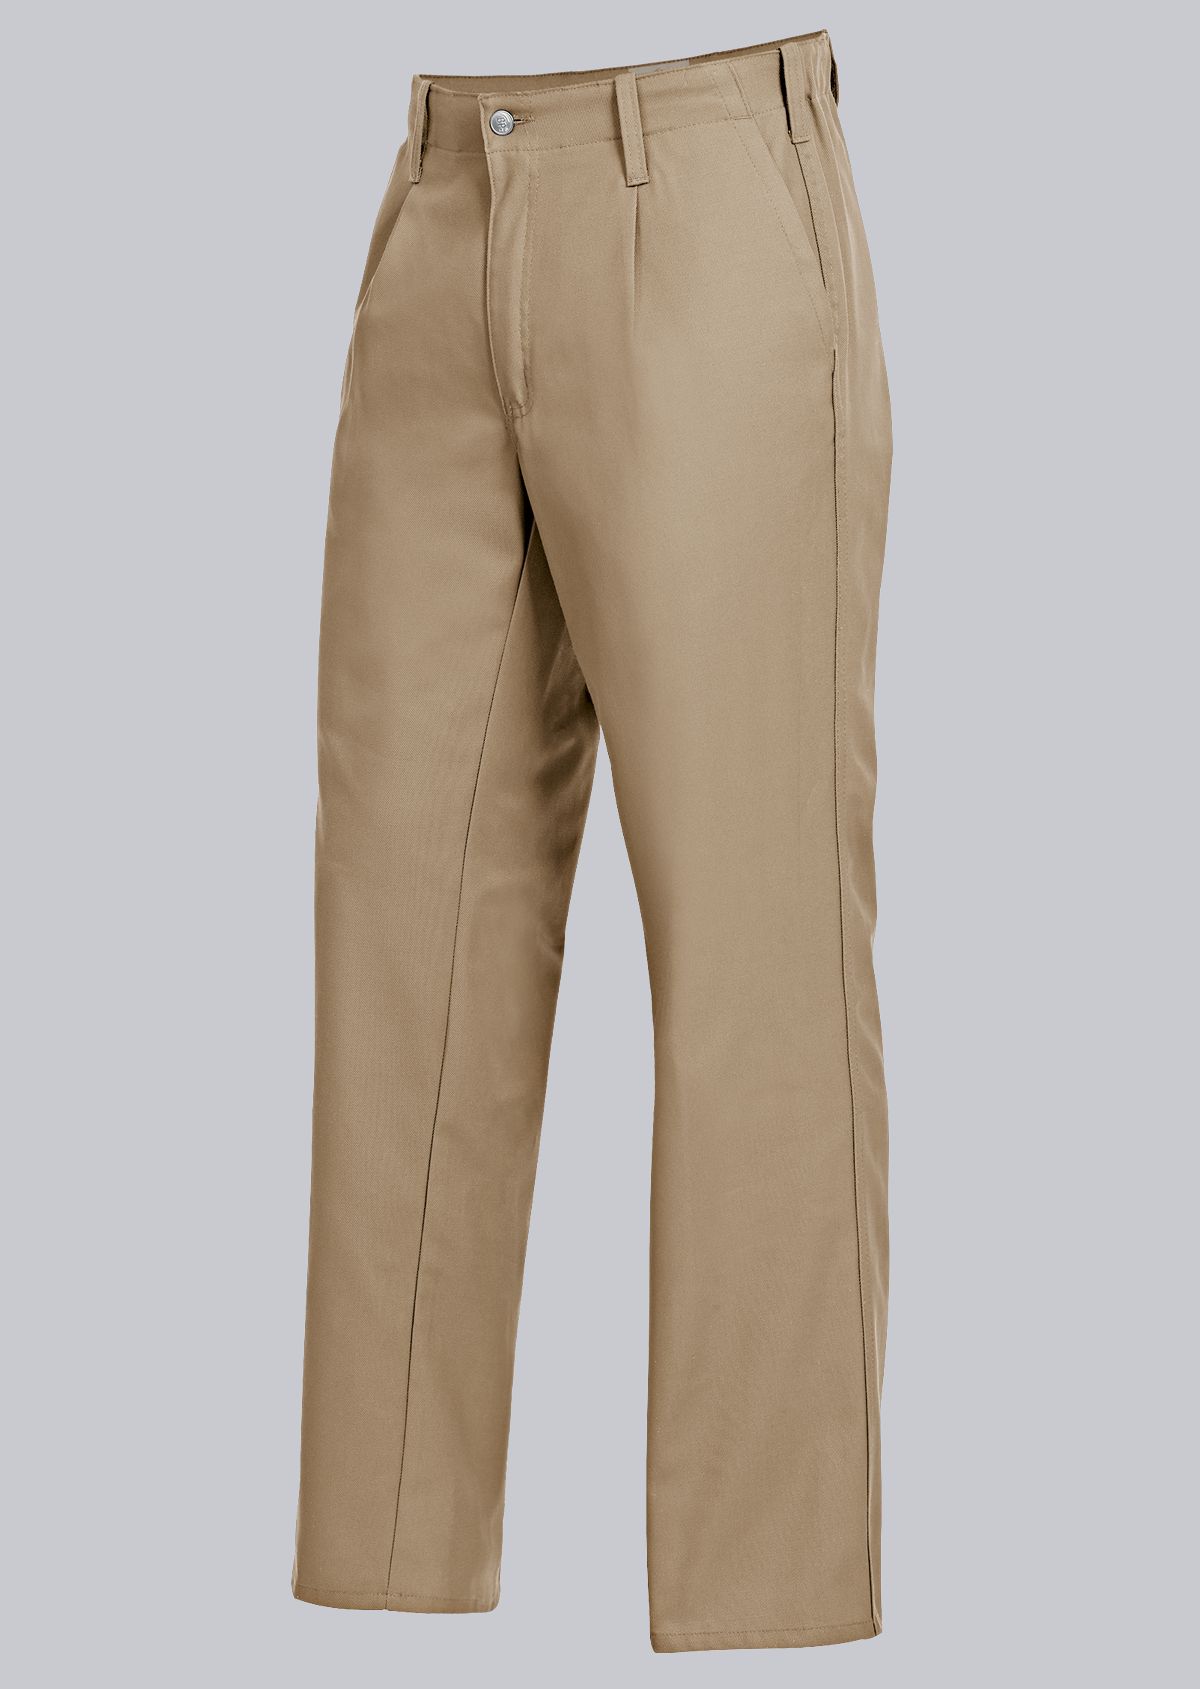 BP® Pantalon de travail confort